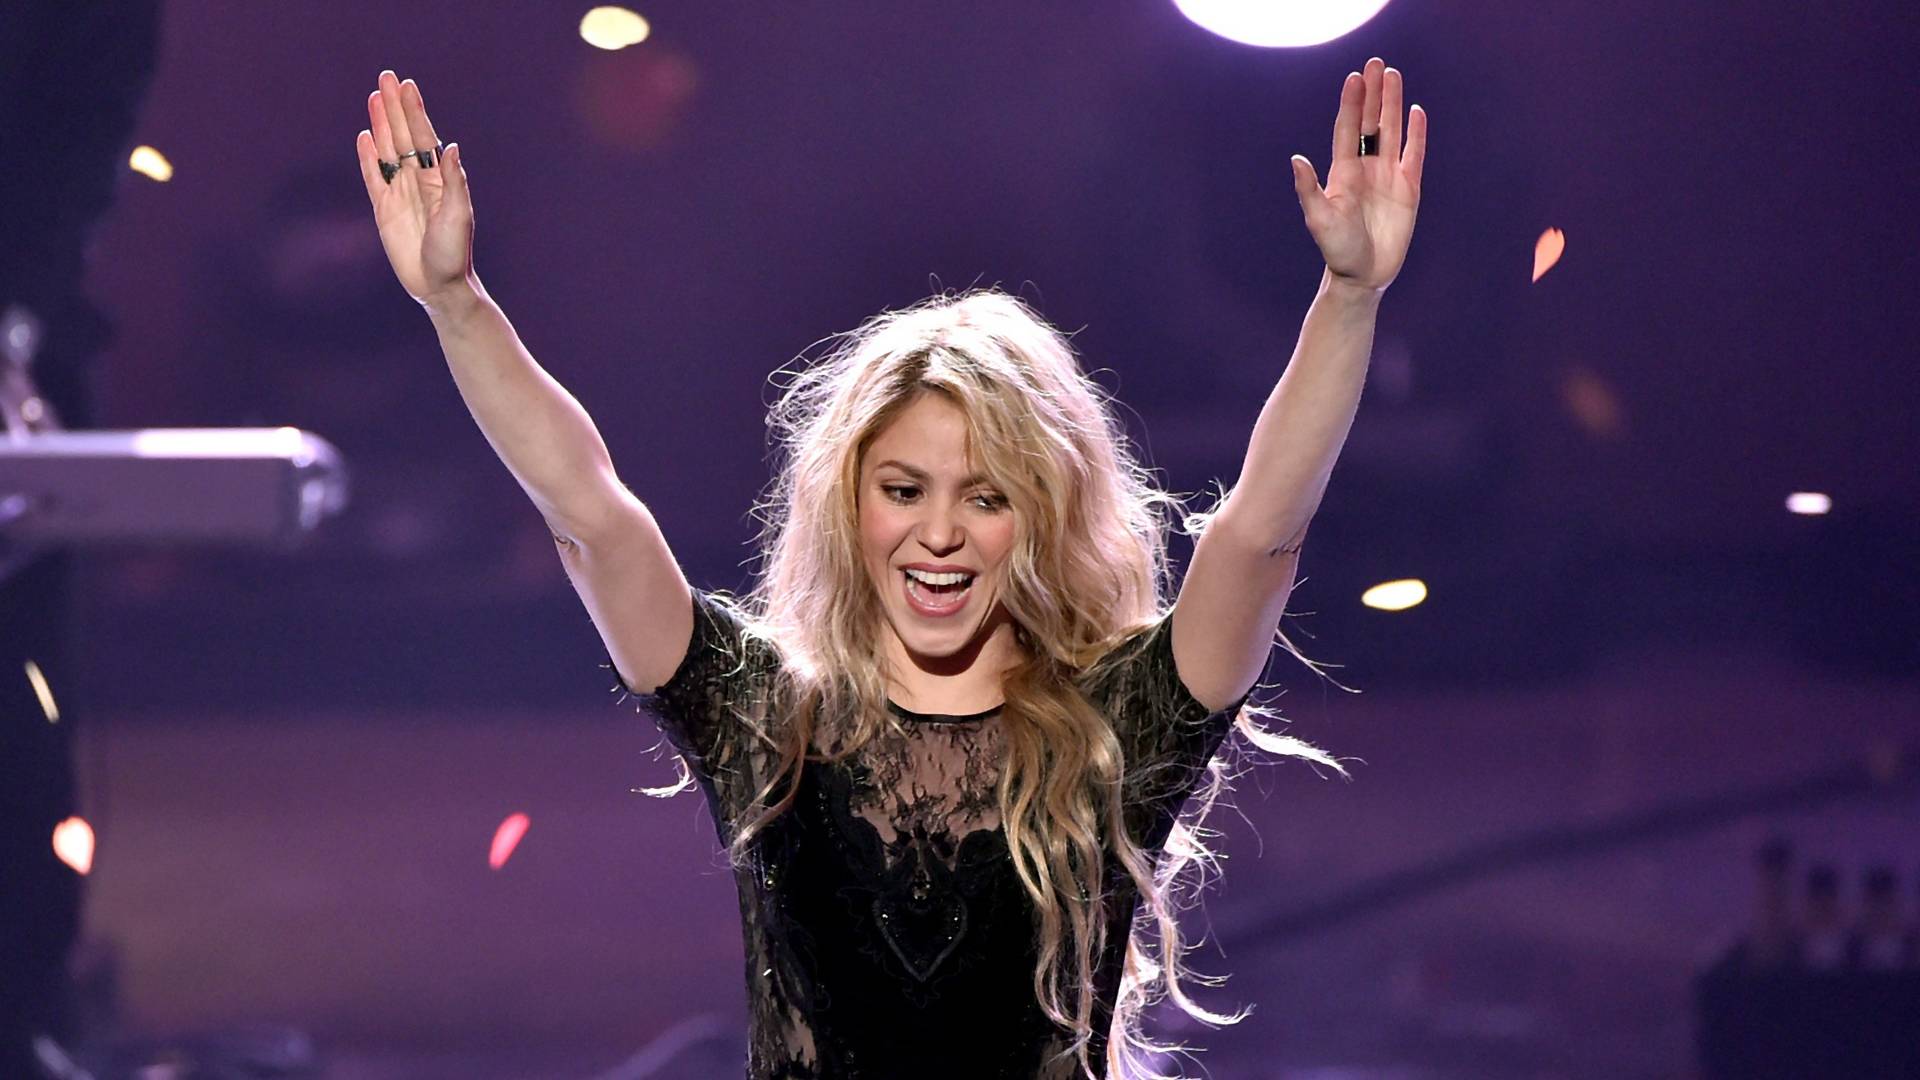 Turné lemondva - Shakira betegebb, mint hittük